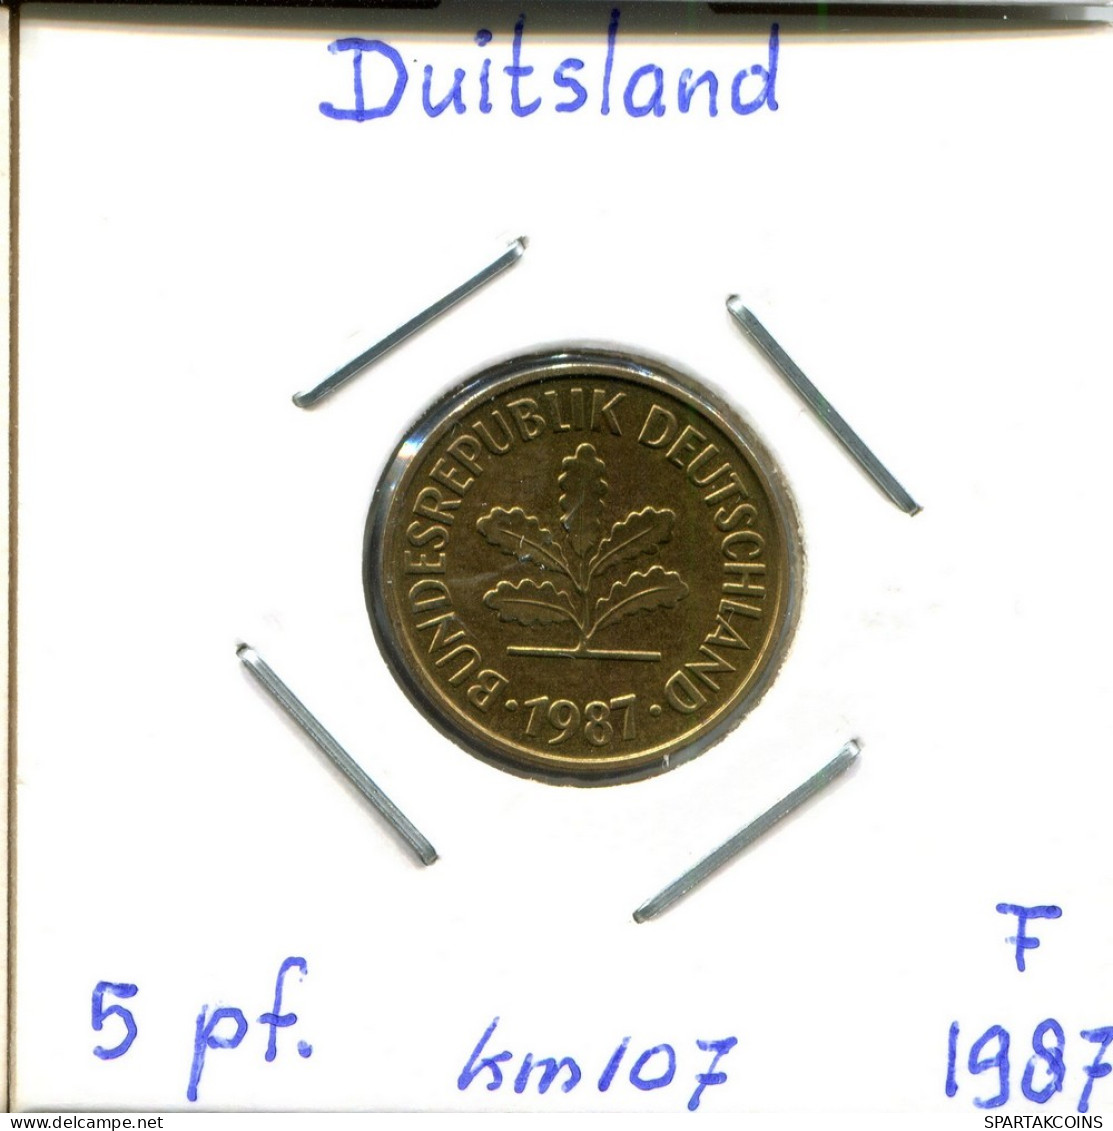 5 PFENNIG 1987 F BRD ALEMANIA Moneda GERMANY #DC446.E - 5 Pfennig